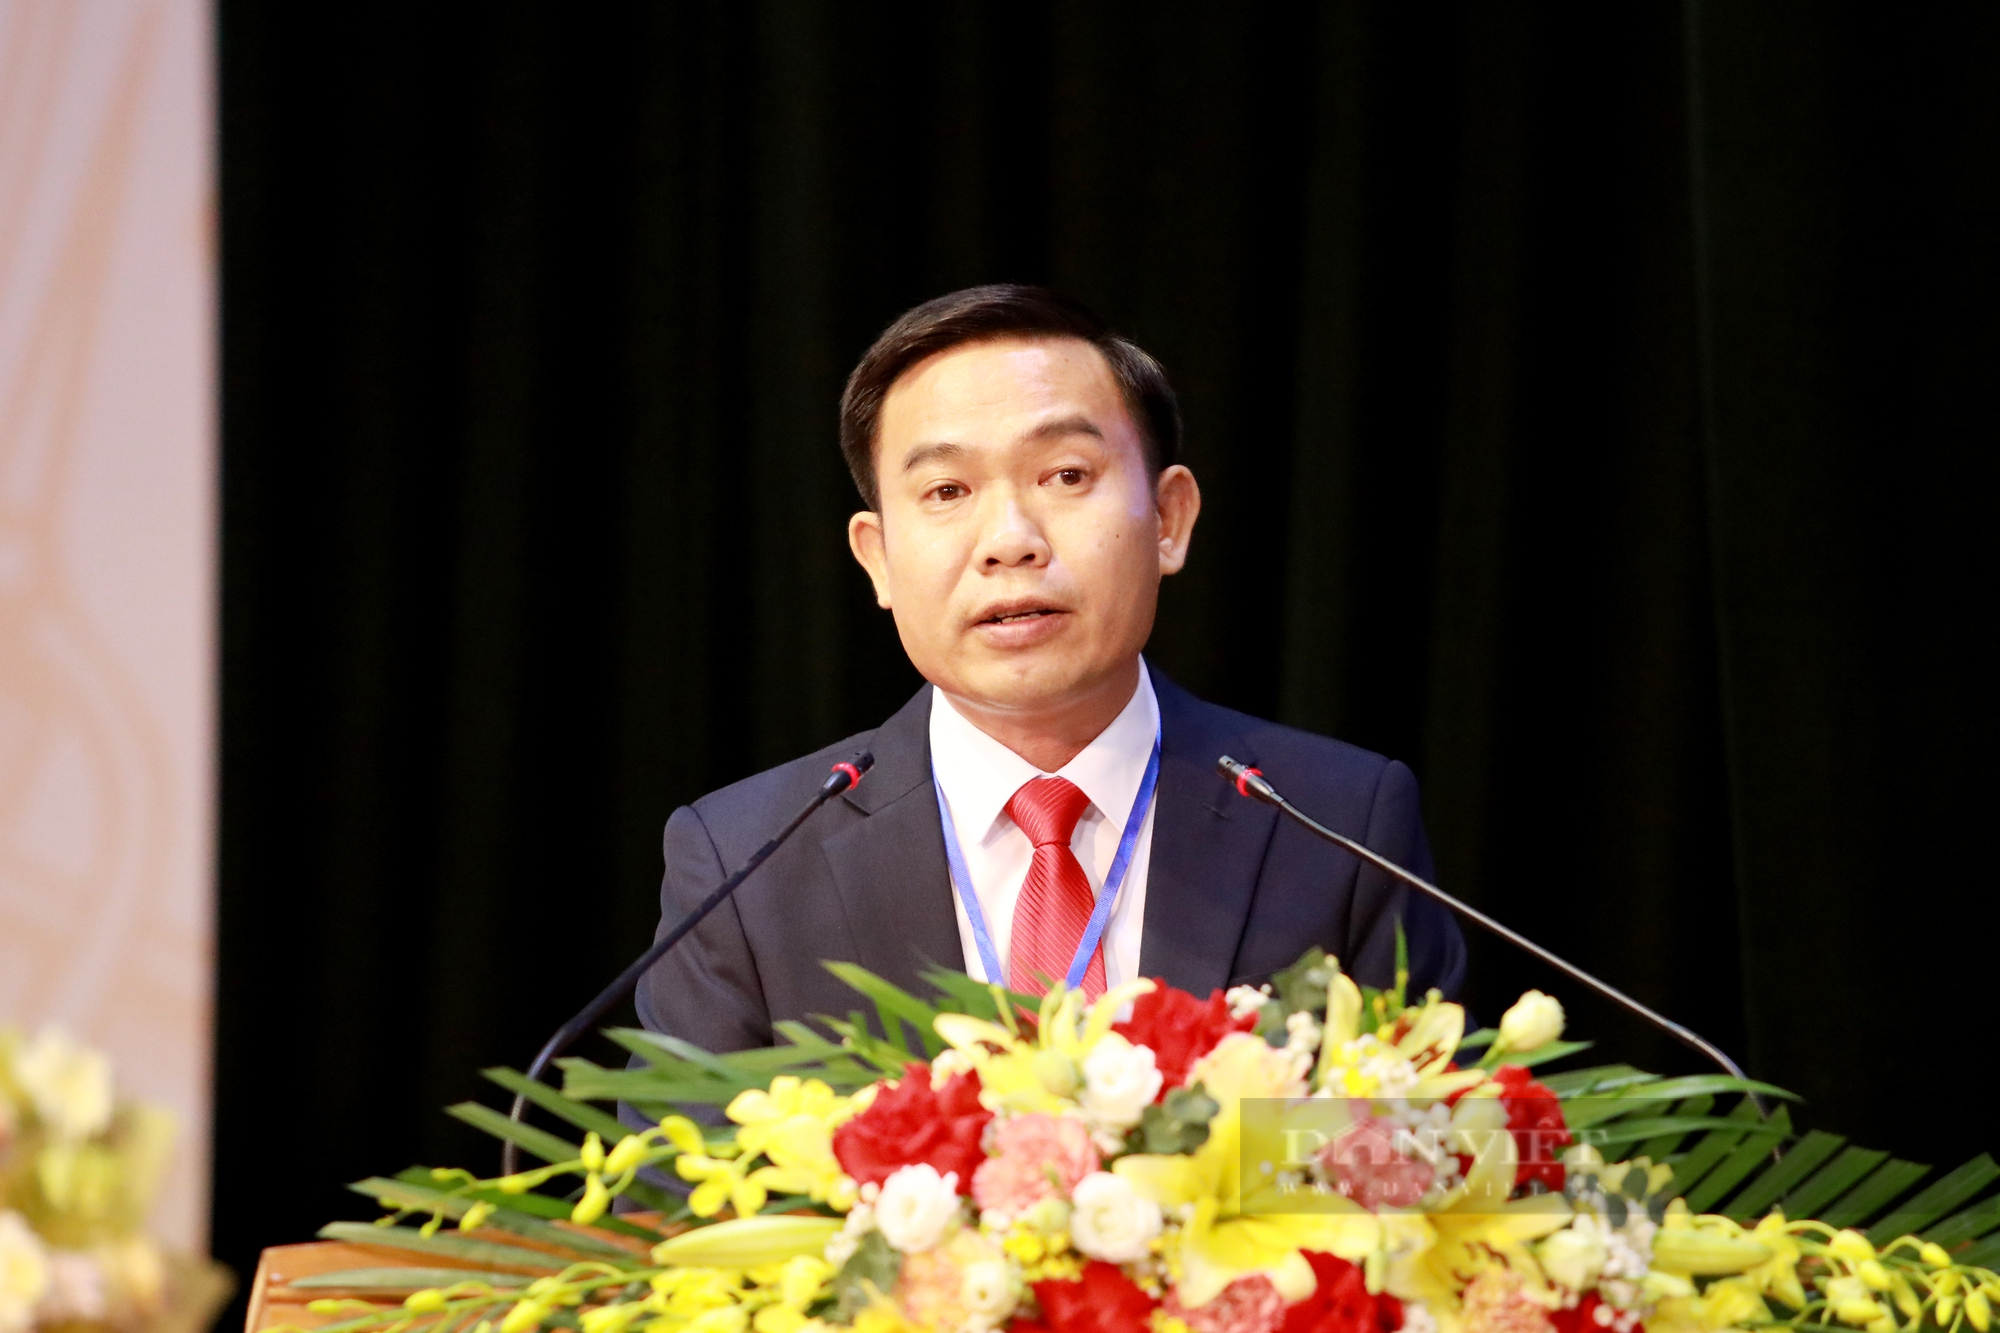 Phó Chủ tịch Hội NDVN và Bí thư Thường trực Tỉnh ủy Hà Tĩnh dự, chỉ đạo Đại hội Hội Nông dân tỉnh - Ảnh 4.